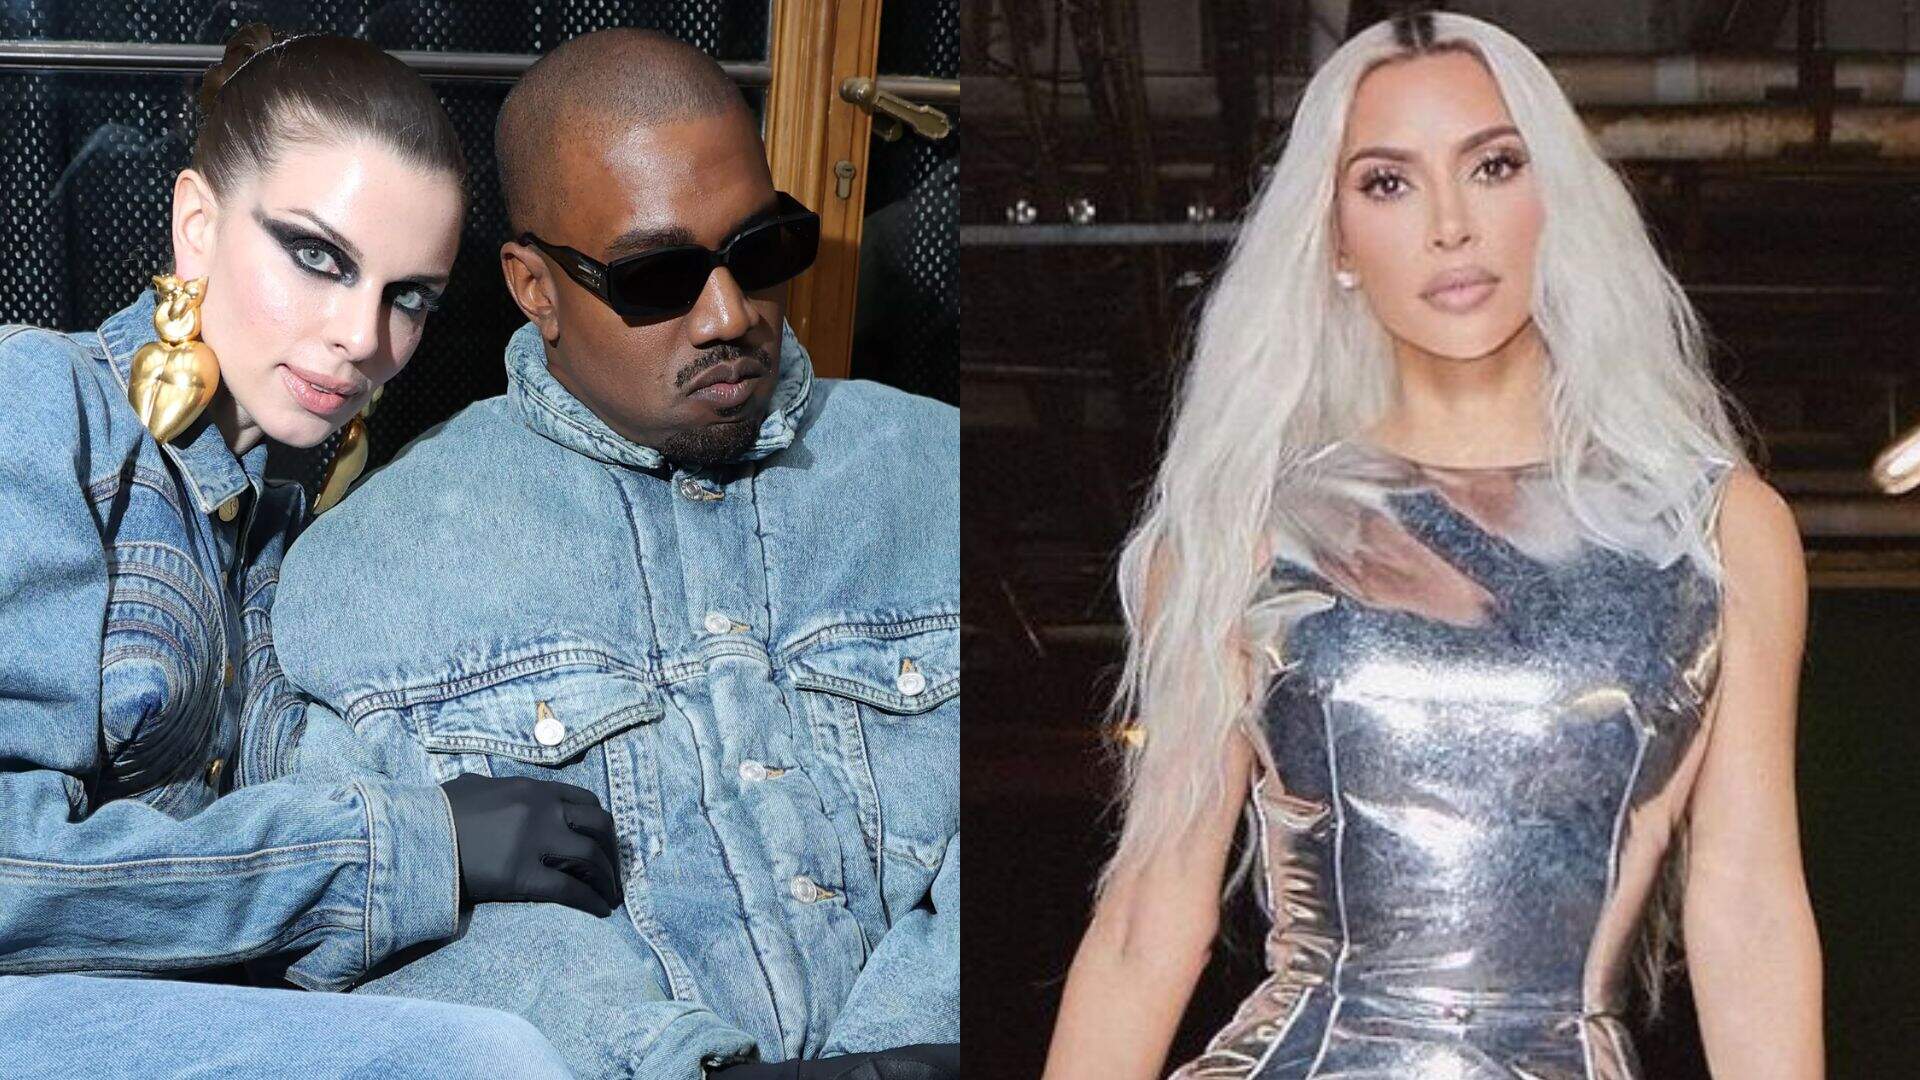 Julia Fox admite relacionamento com Kanye West para salvar Kim Kardashian: “Tão idiota” - Metropolitana FM